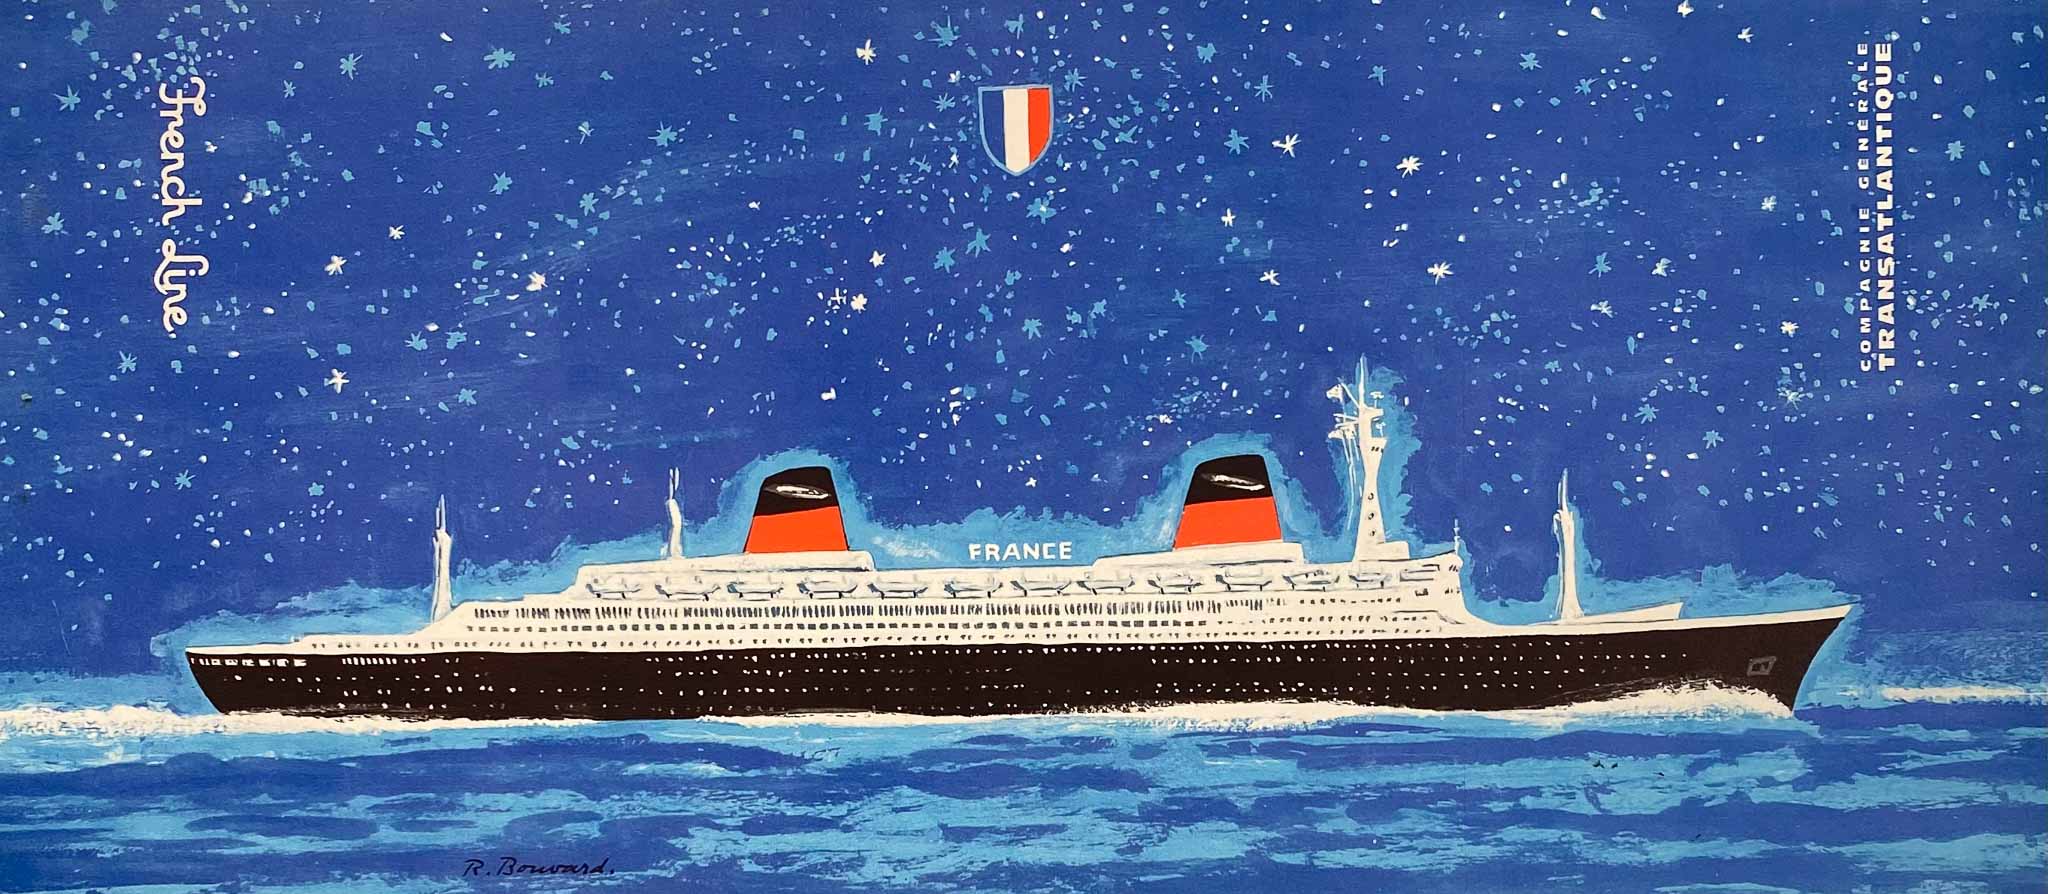 Affiche France Cie Gle Transtlantique French Line par Bouvard R., 196